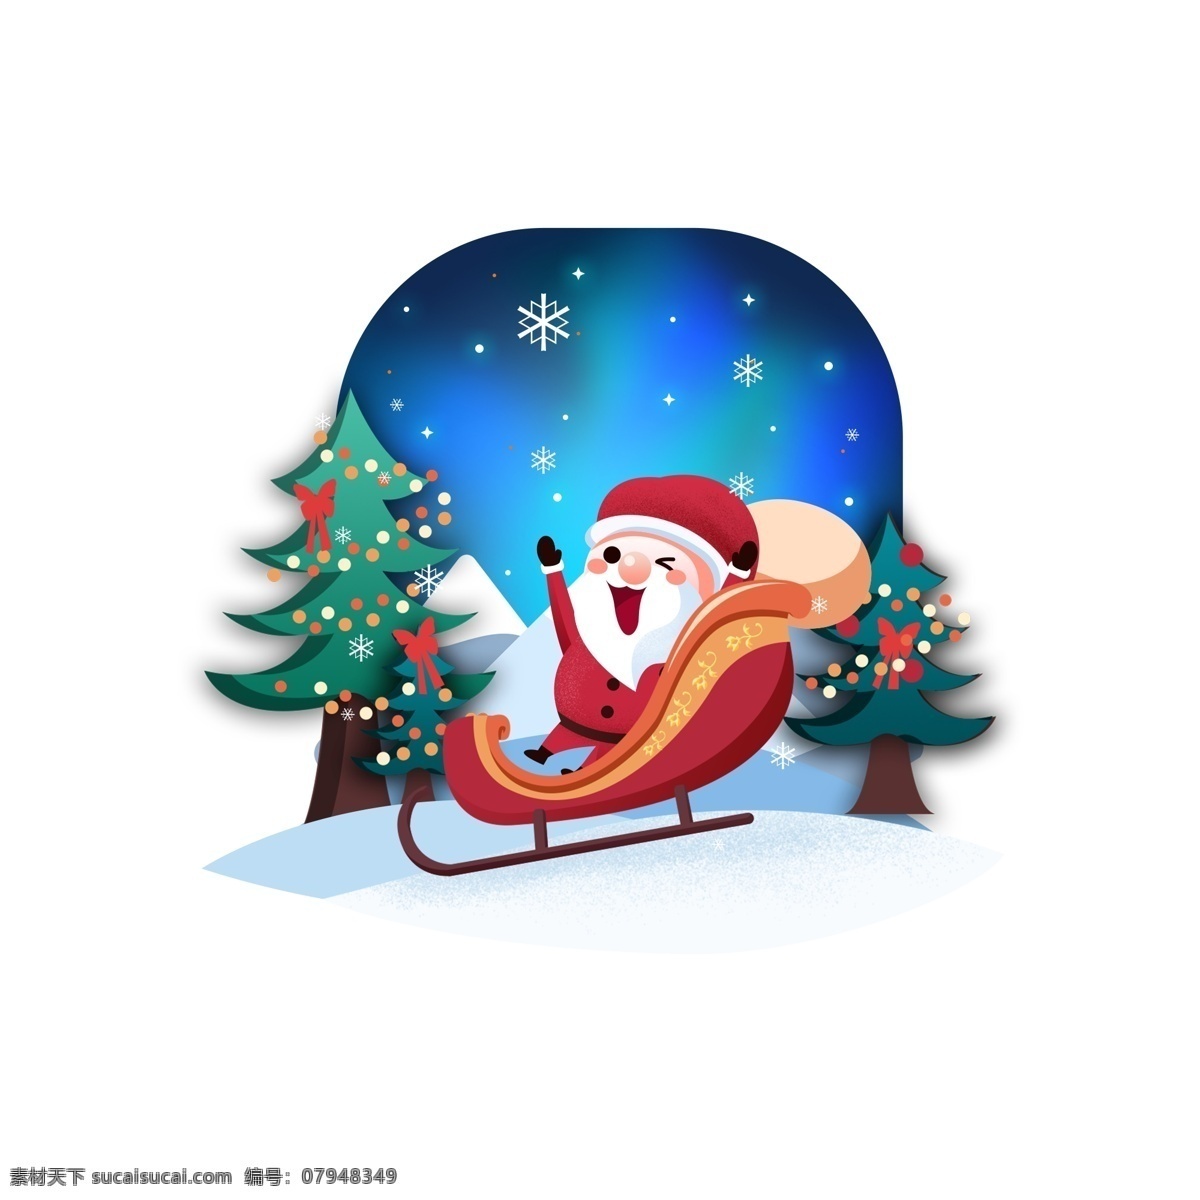 圣诞节 圣诞老人 送礼 物 礼物 雪山 圣诞树 可爱 雪橇 平安夜 极光 卡通